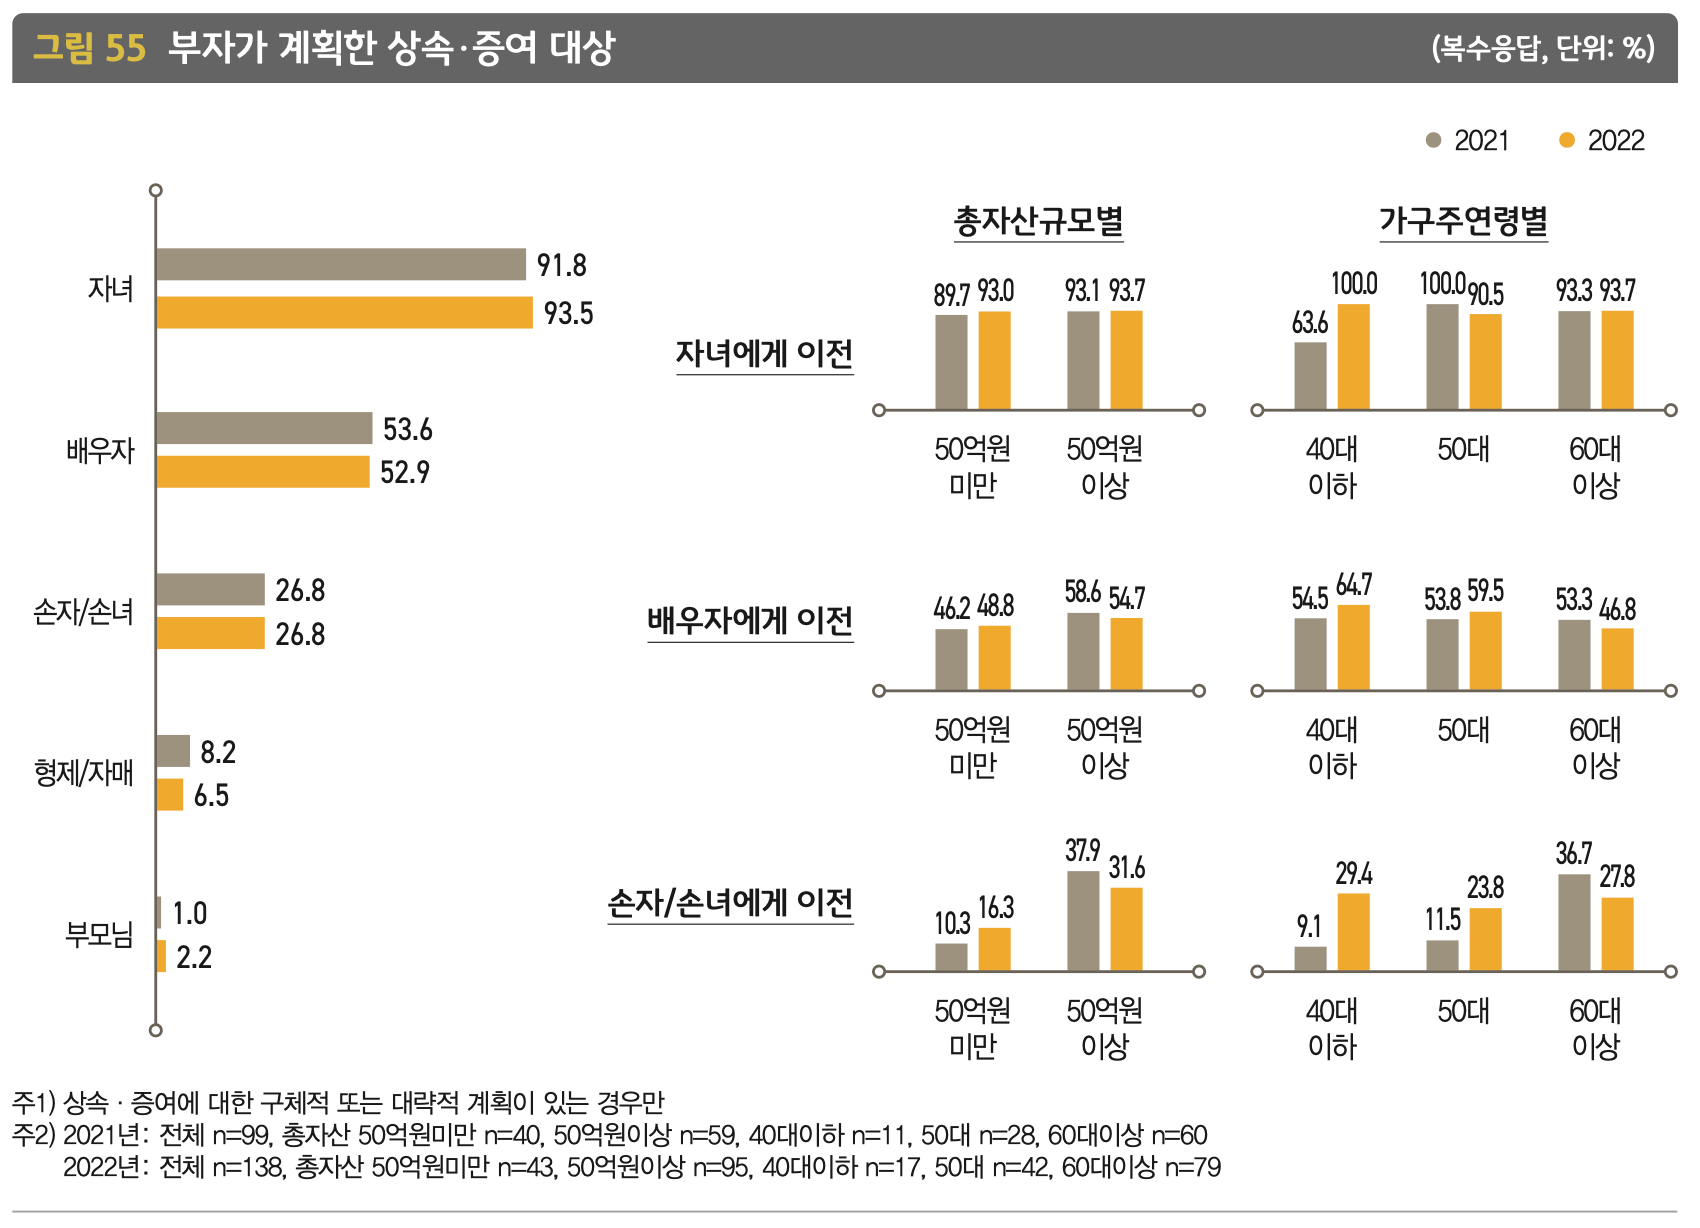 한국 부자가 계획한 상속, 증여 대상을 나타낸 그래프입니다.